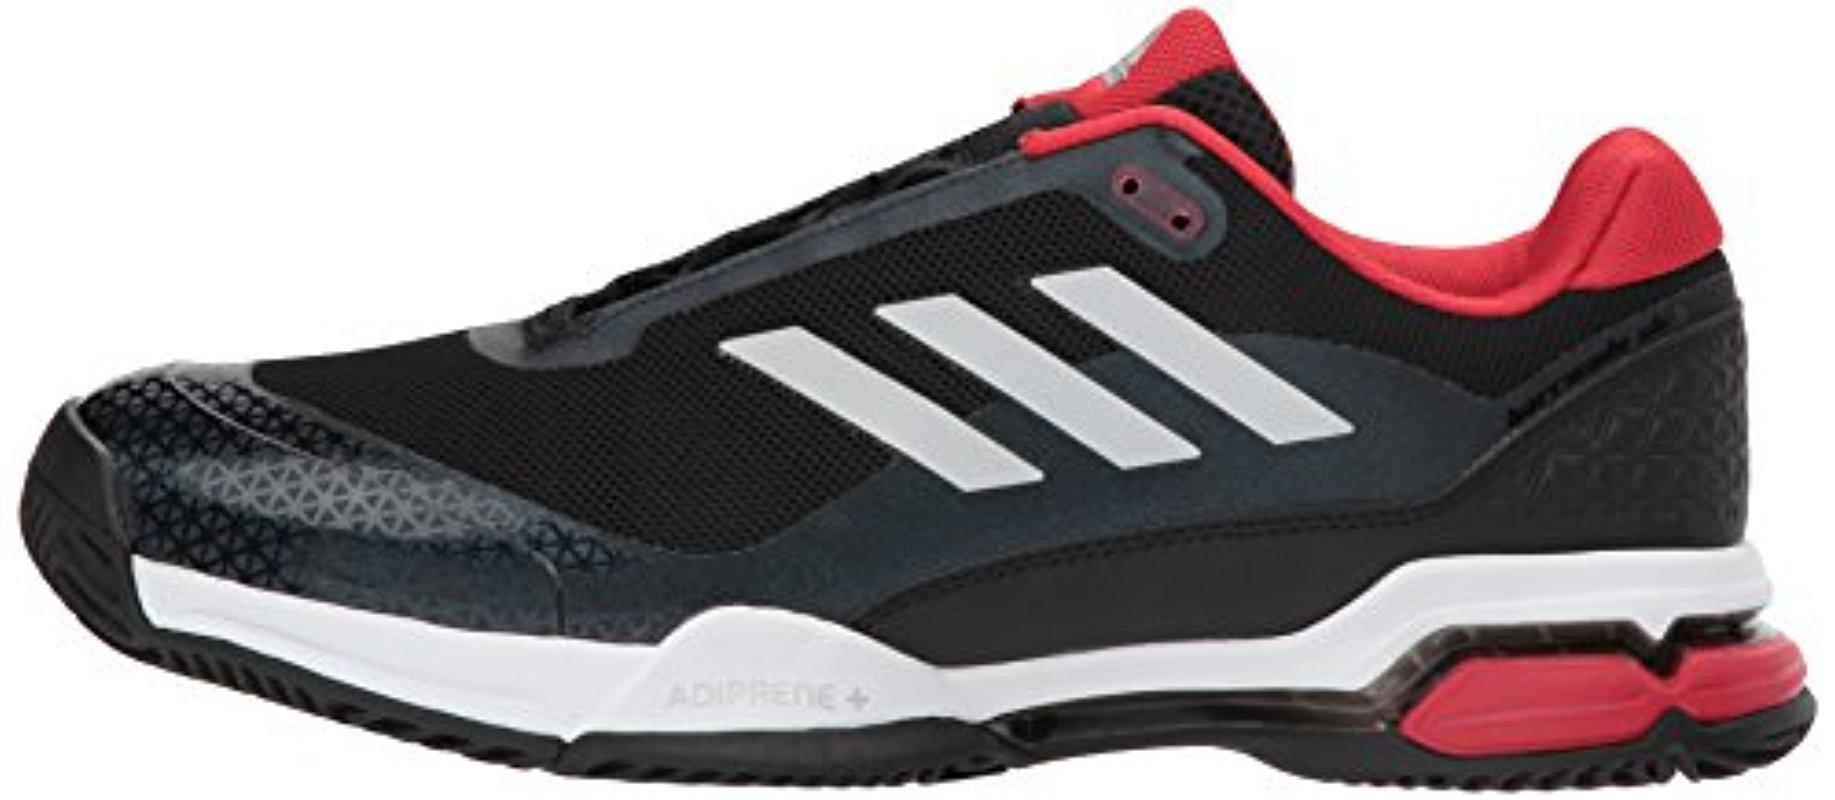 adidas club tennis shoes